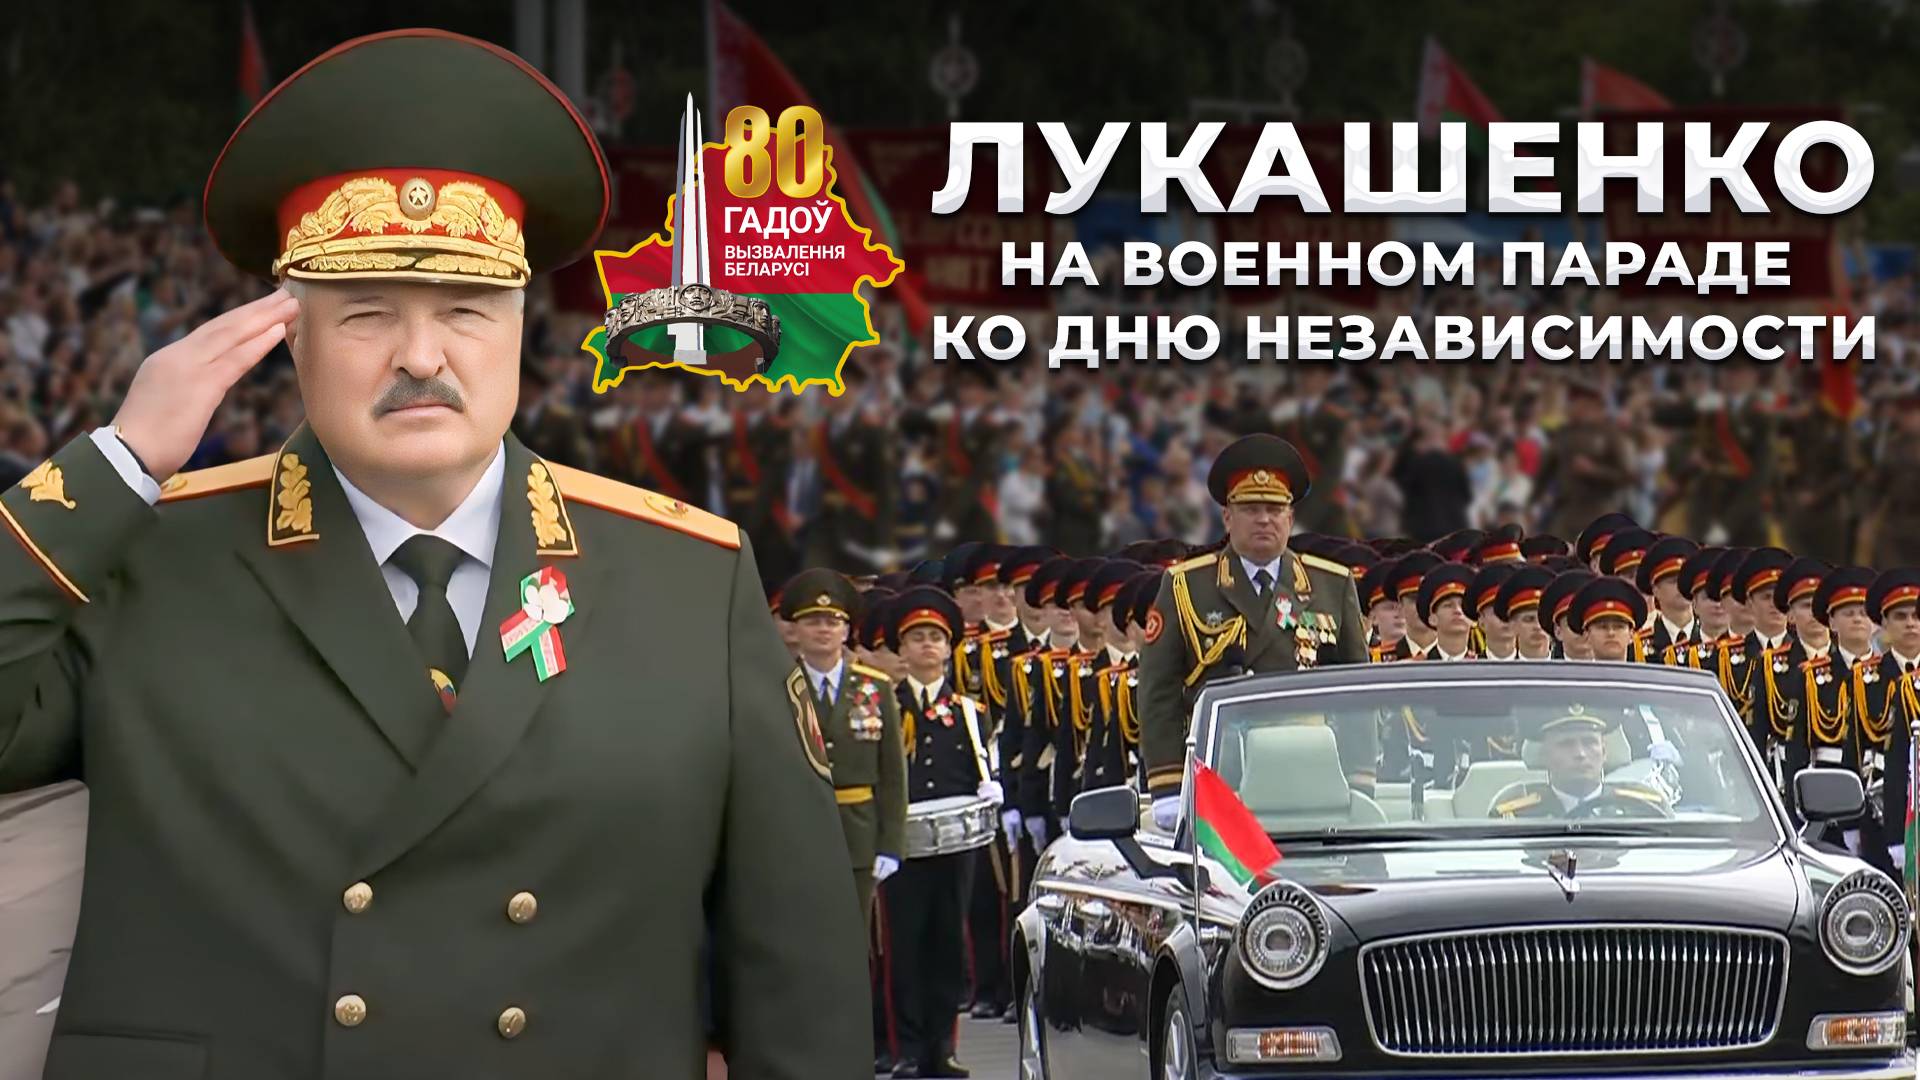 ⚡️Полная речь Лукашенко на Военном параде в Минске. Что сказал Президент? 3 июля